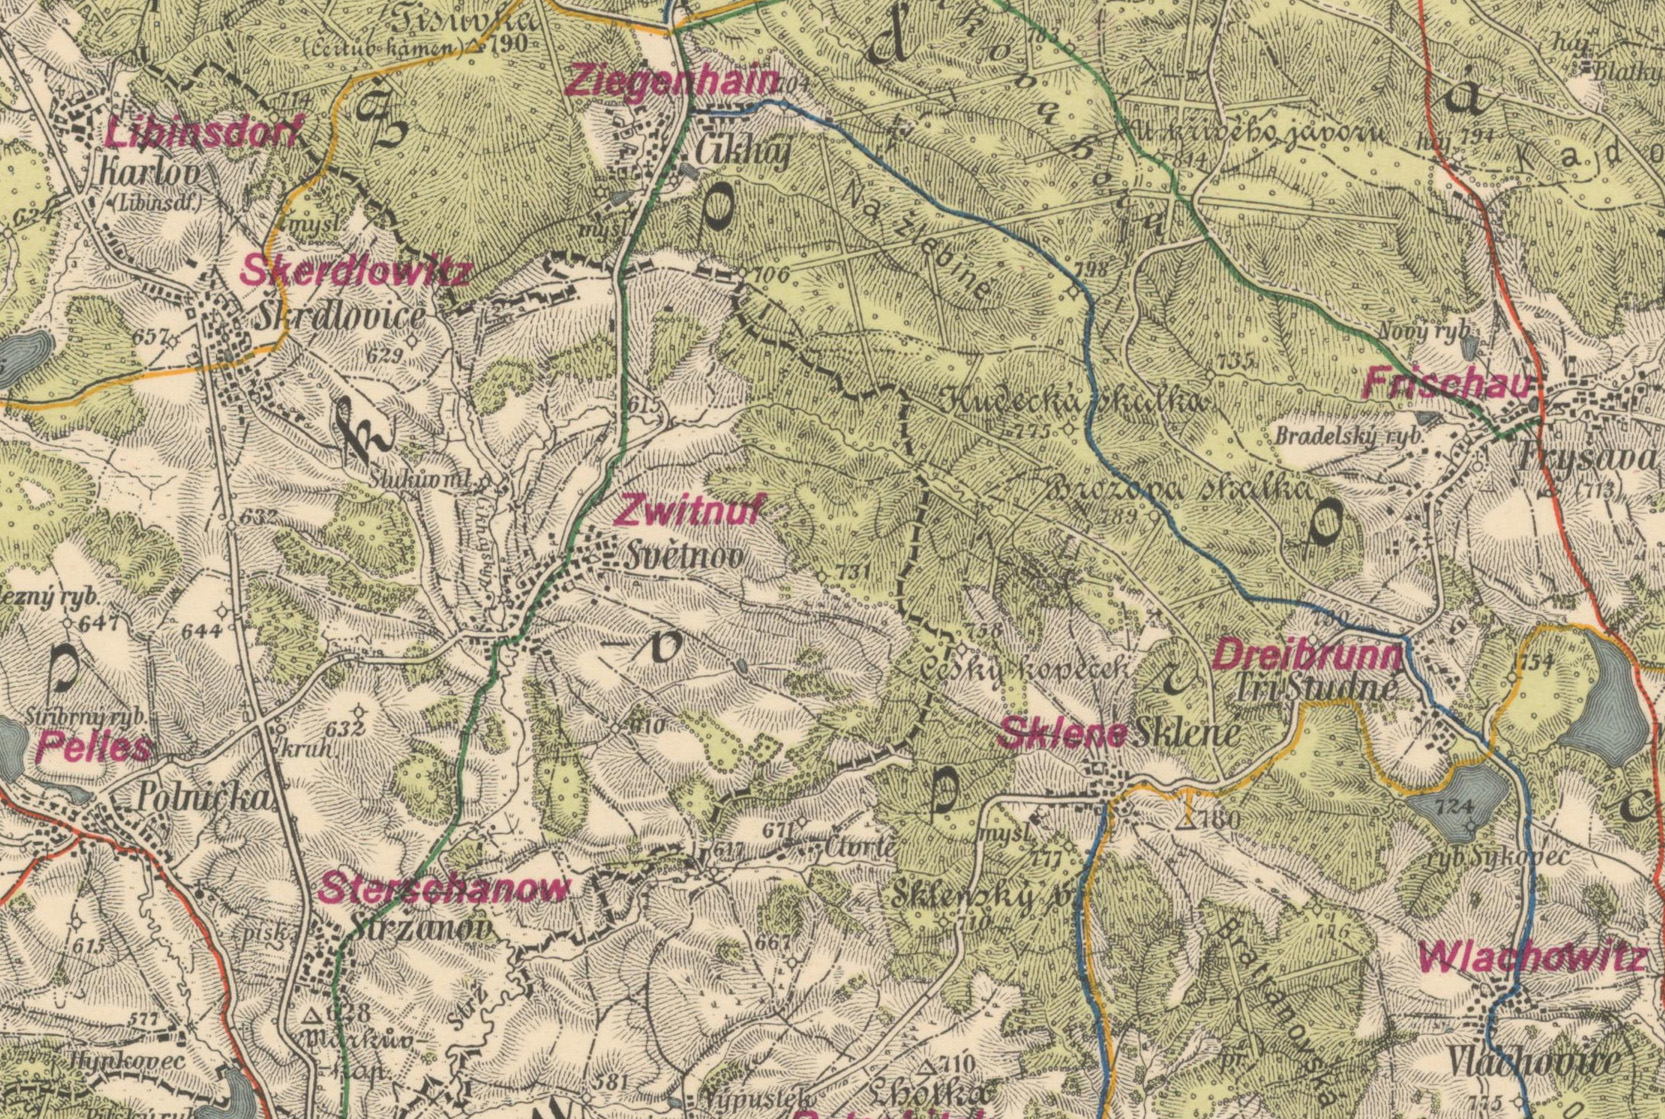 Výřez speciální mapy 1:75 000 s dotiskem německých jmen měst a obcí